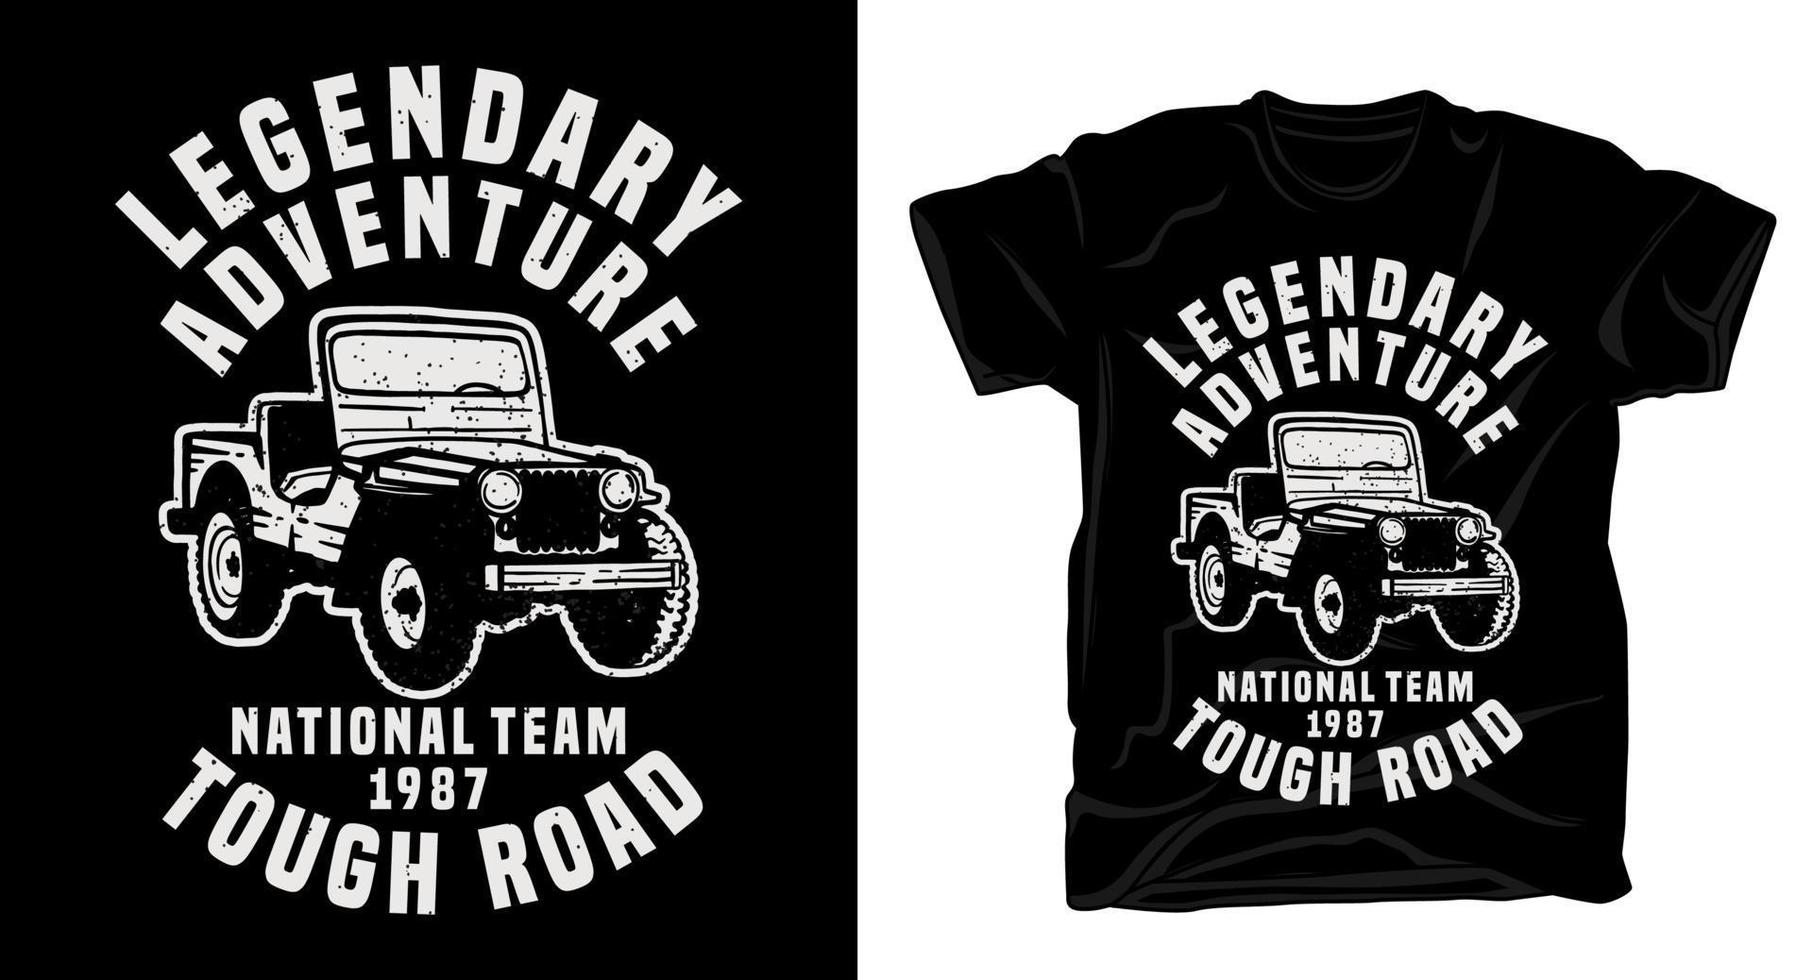 tipografia leggendaria dell'avventura con il classico design della maglietta dell'auto jeep vettore